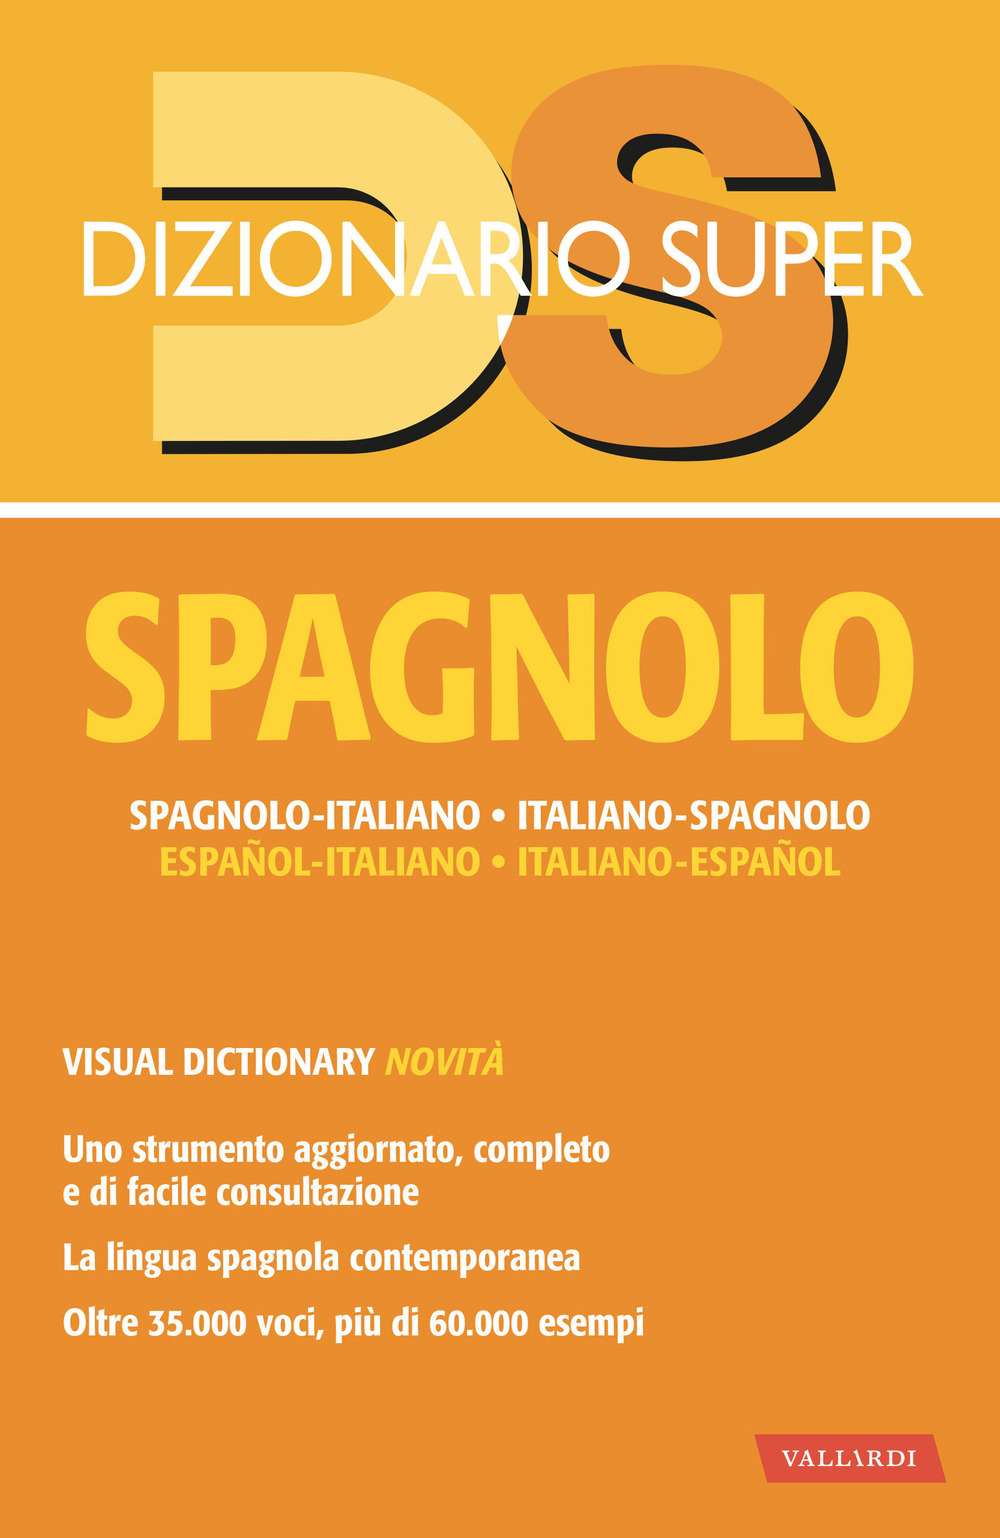 Dizionario spagnolo. Spagnolo-italiano, italiano-spagnolo. Con visual